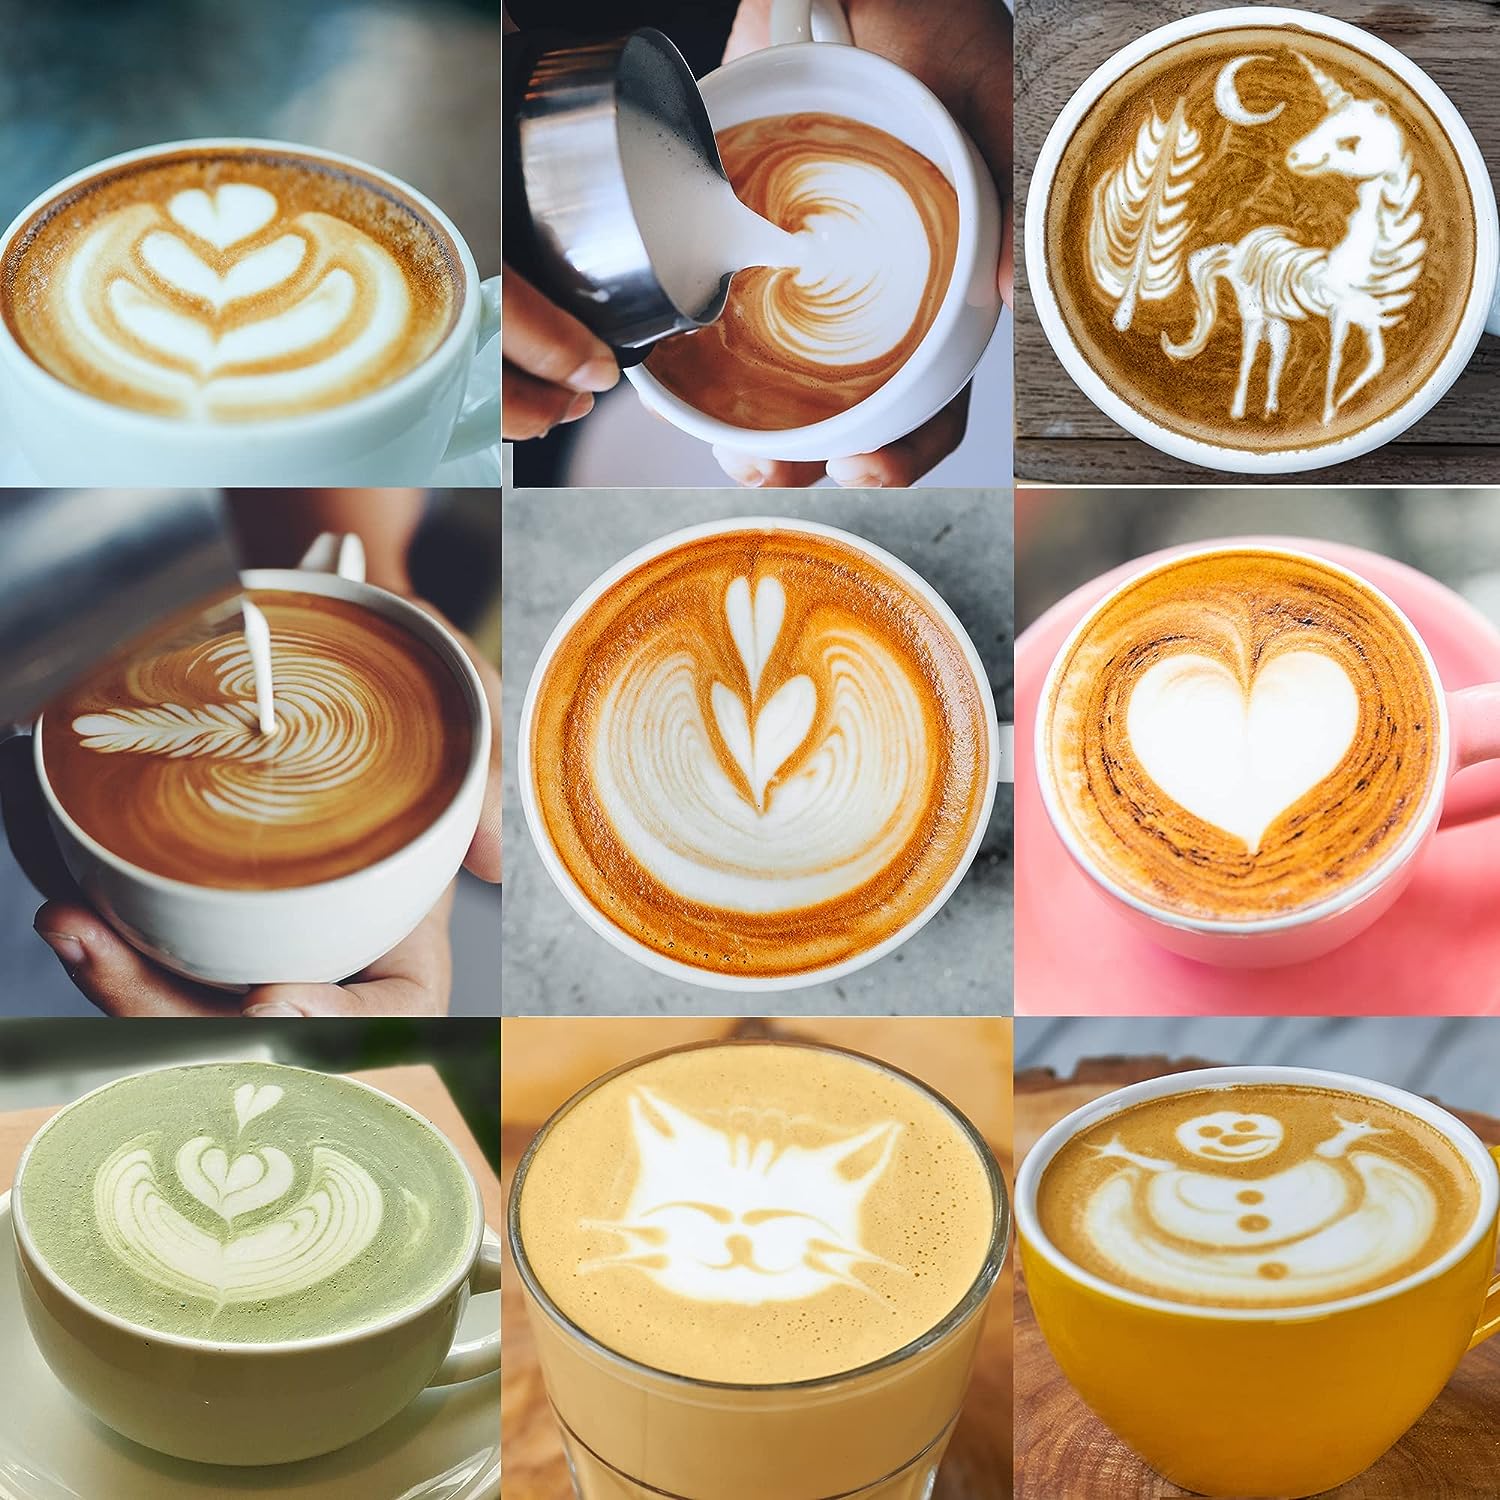 Different latte art designs using milk pitcher